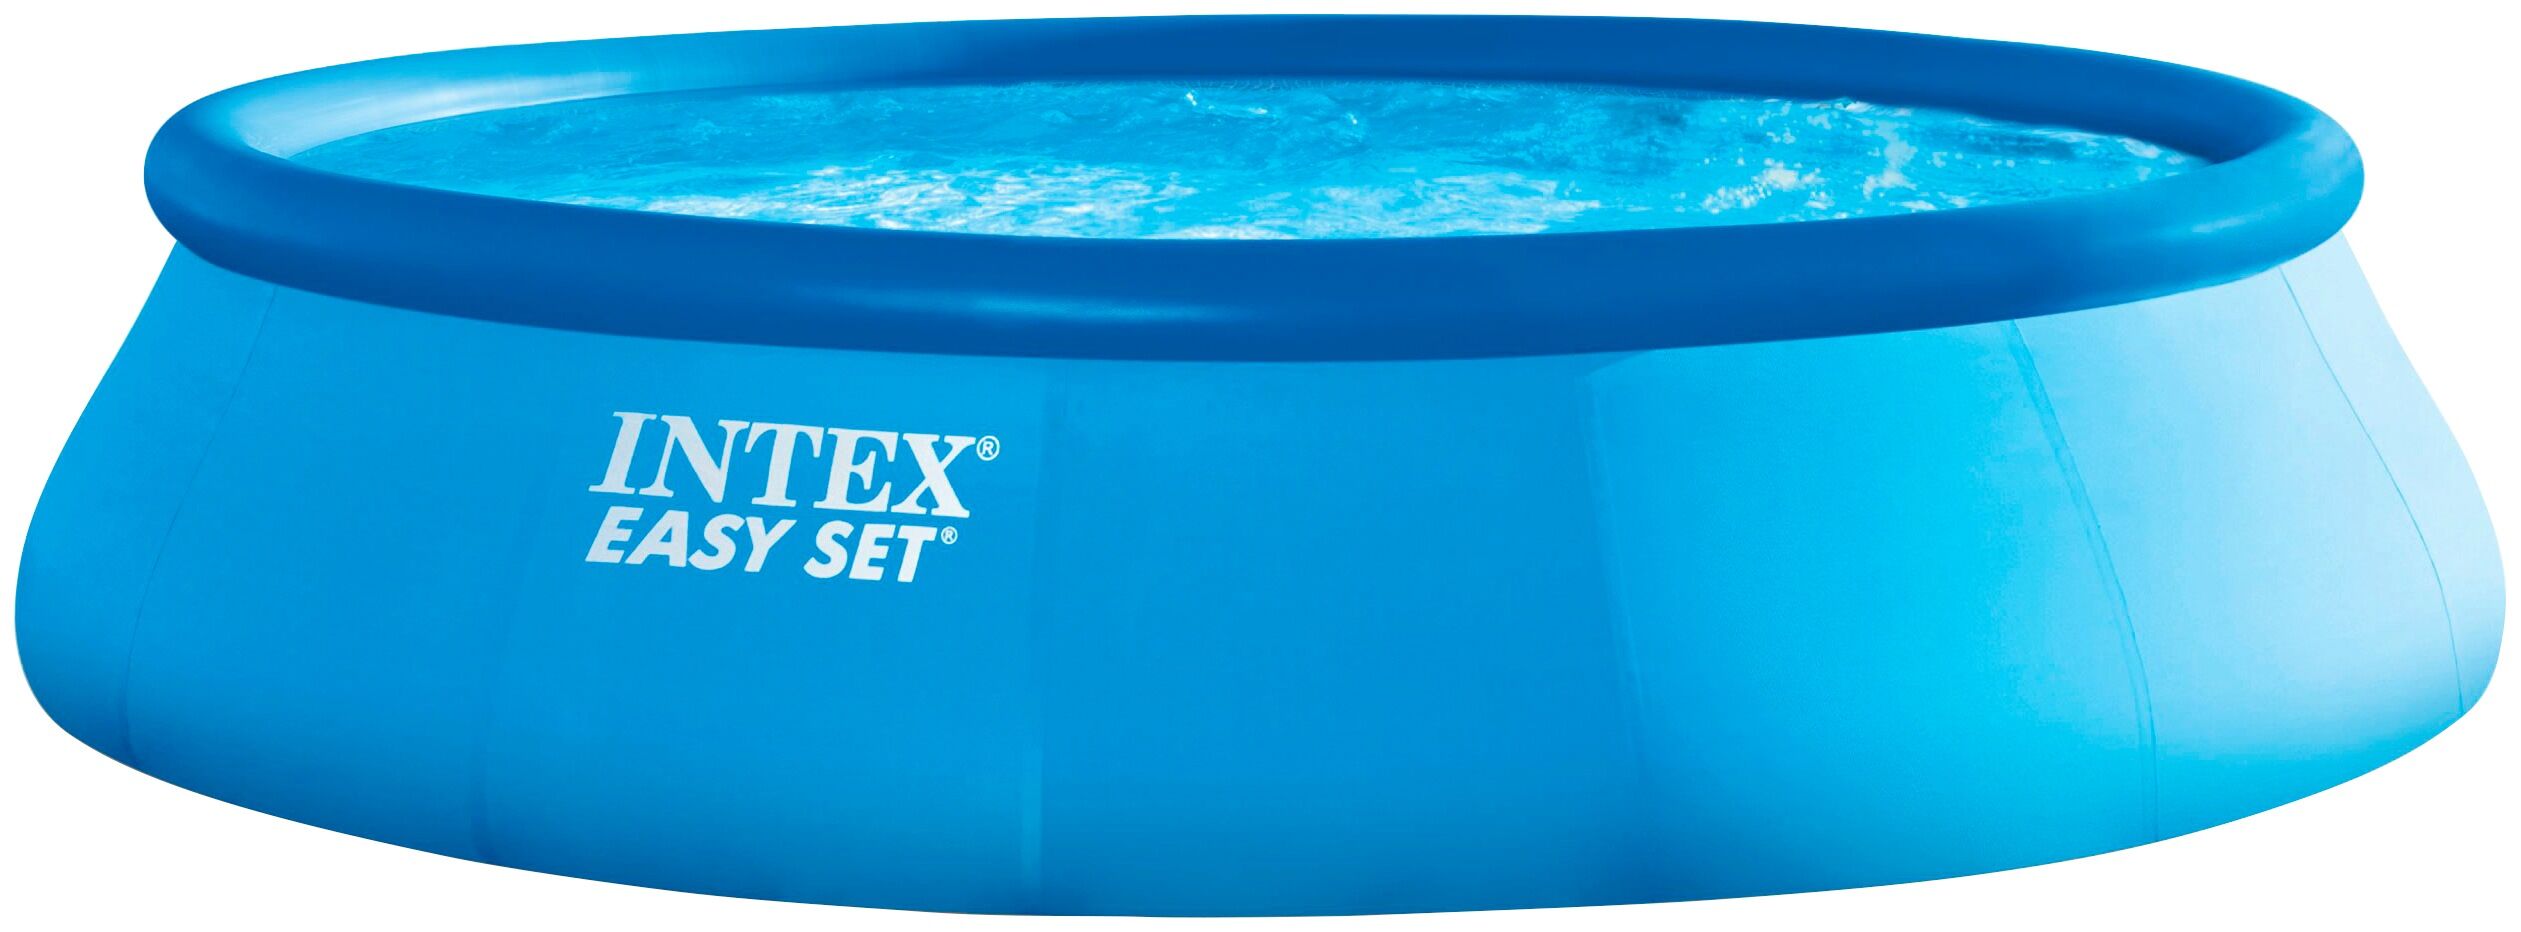 Intex Quick-Up Pool INTEX "Easy Set" Schwimmbecken Gr. Ø/B/H/L: 457 cm x Breite x Höhe 84 cm x Länge, 9800 l, blau Quick-Up-Pools ØxH: 457x84 cm